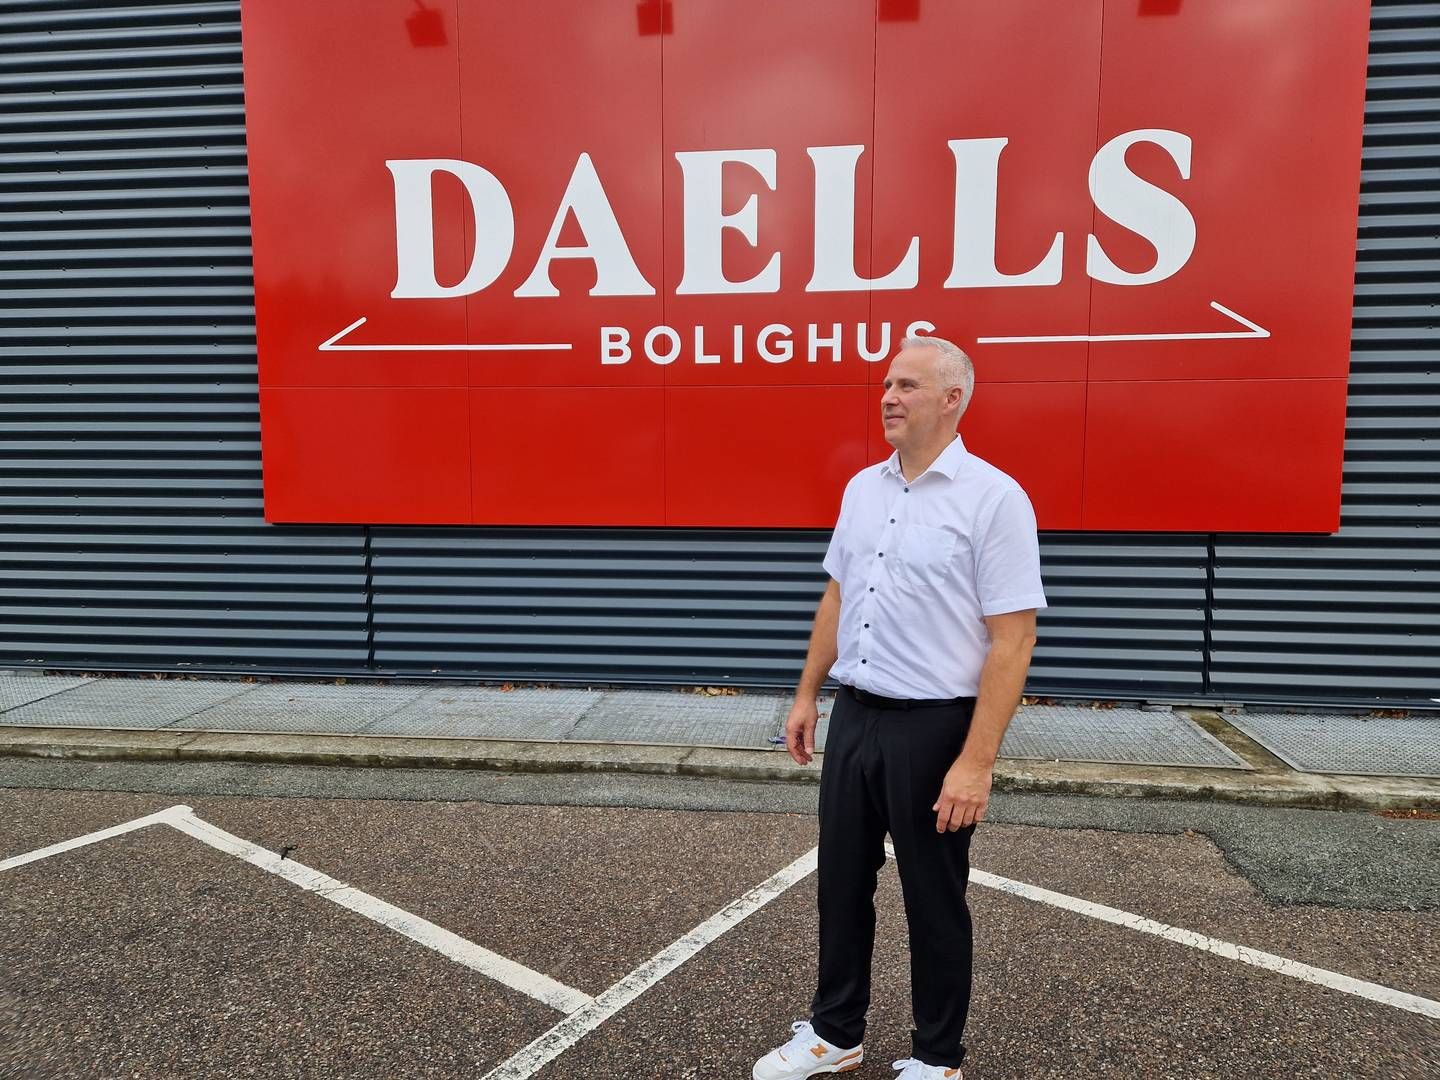 Brian Seemann Broe ser Daells Bolighus som en skjult perle, som danskerne ikke kender. "Vi skal gå fra at være ukendte til at være en lille smule kendte," bemærker han. | Foto: Jens Betak/detailwatch